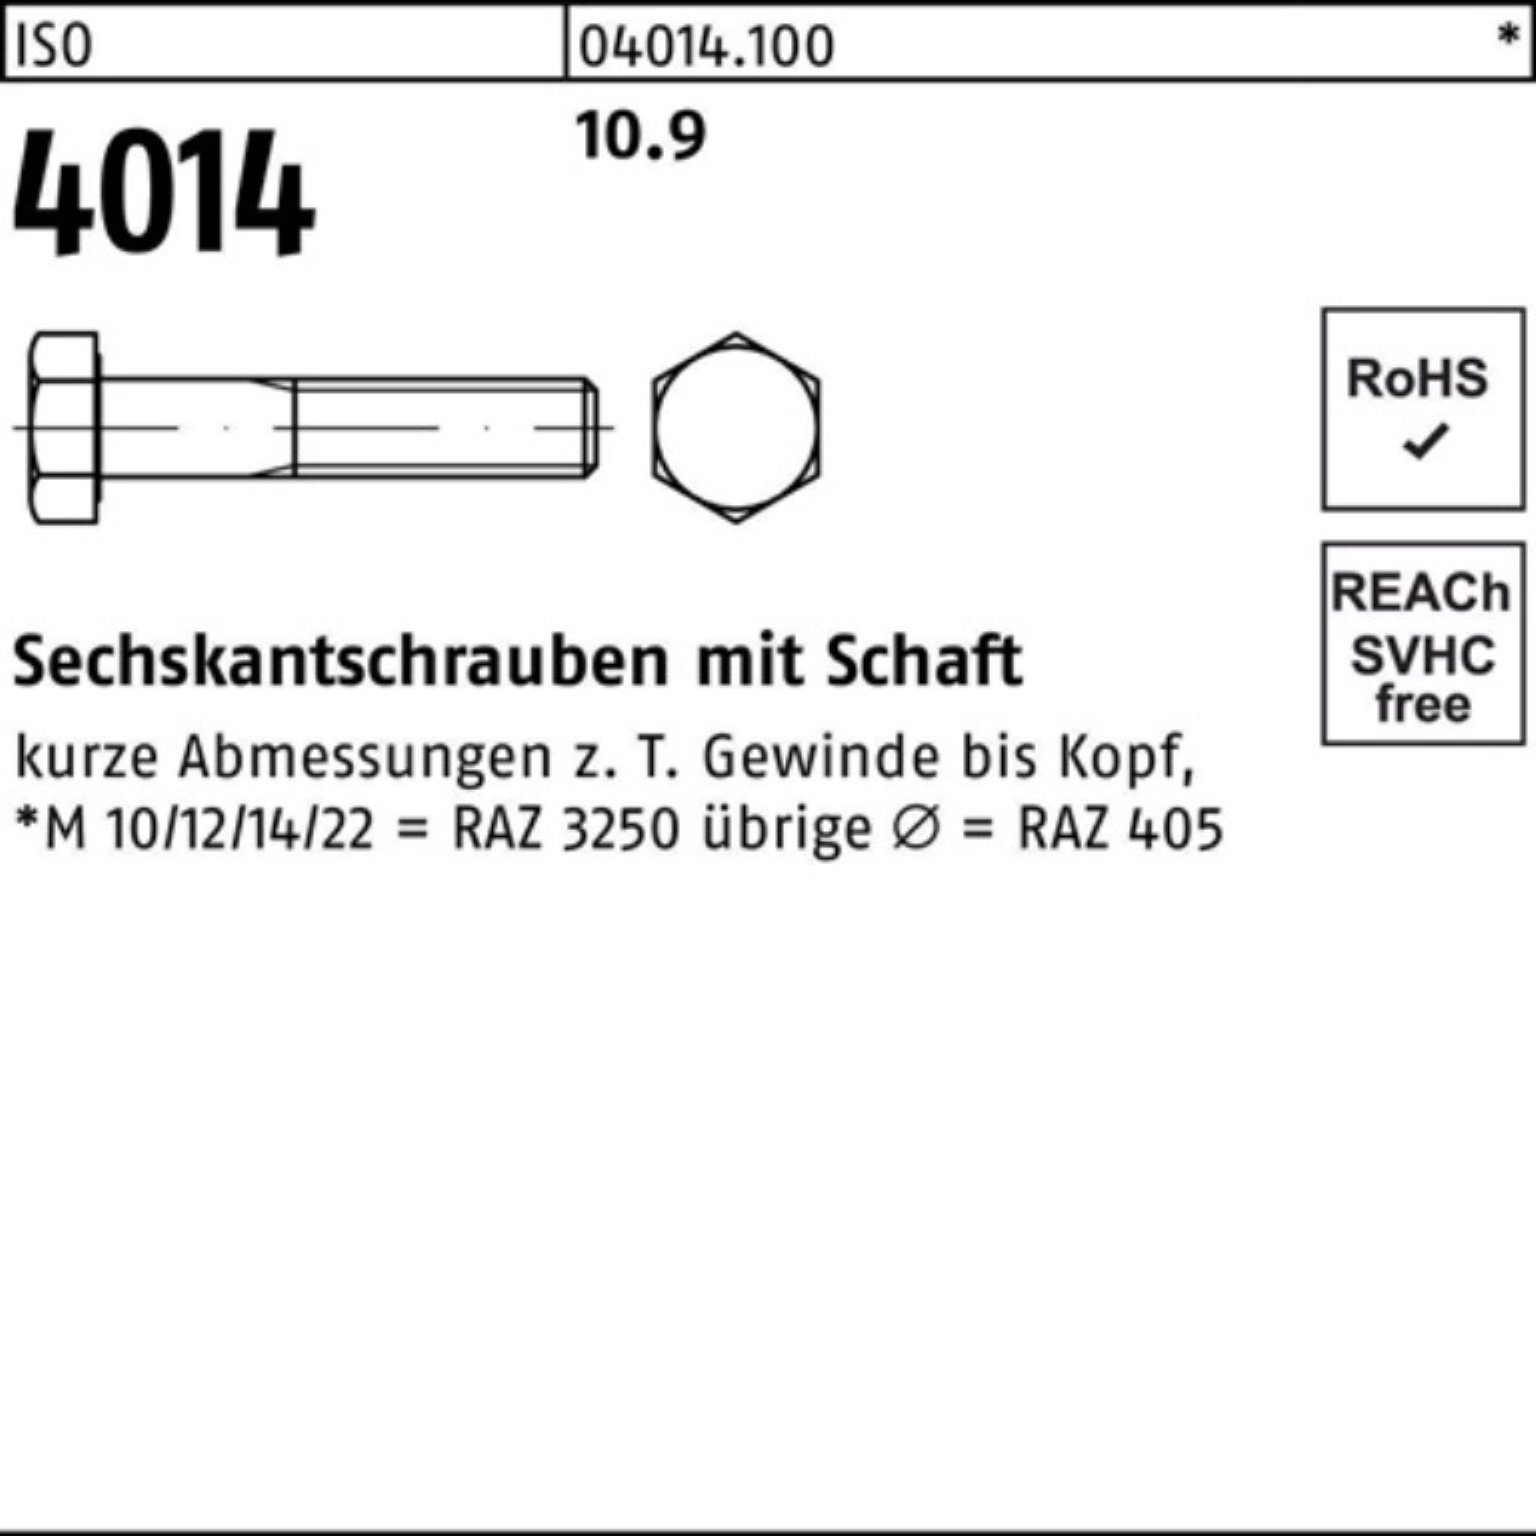 Schaft 80 100er M27x ISO 10 Sechskantschraube IS Stück Bufab Pack 4014 10.9 Sechskantschraube